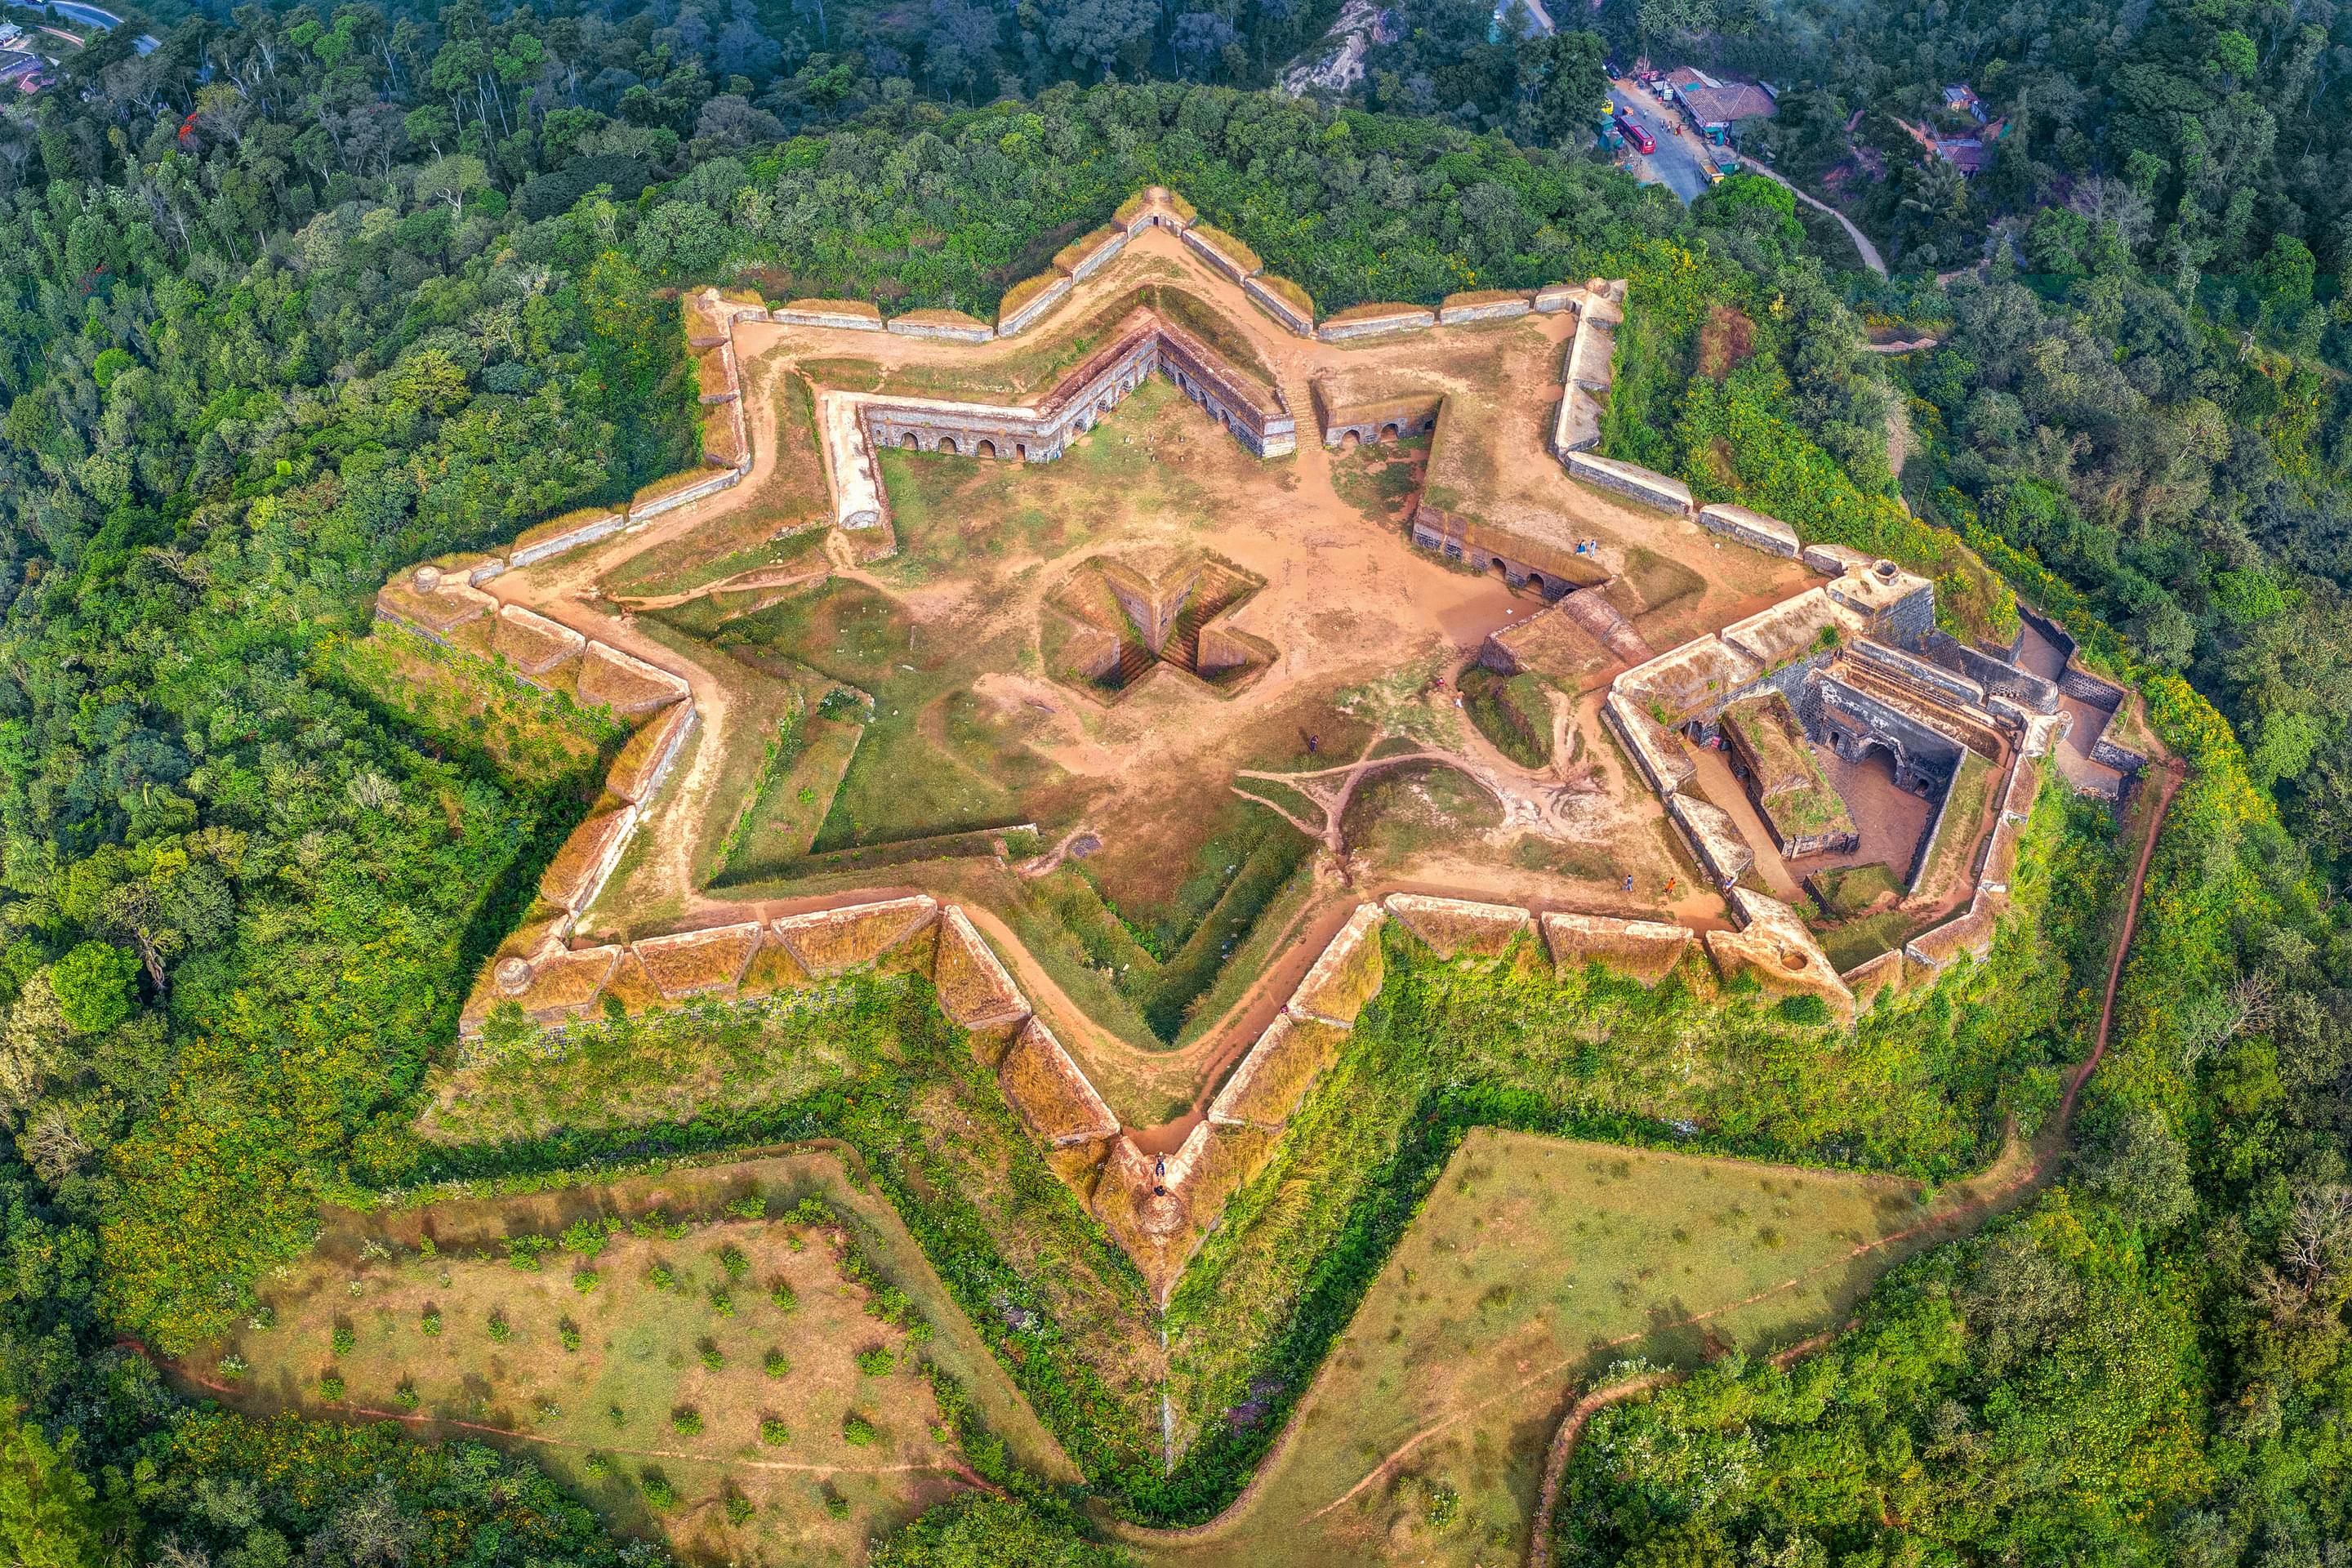 Manjarabad Fort Overview